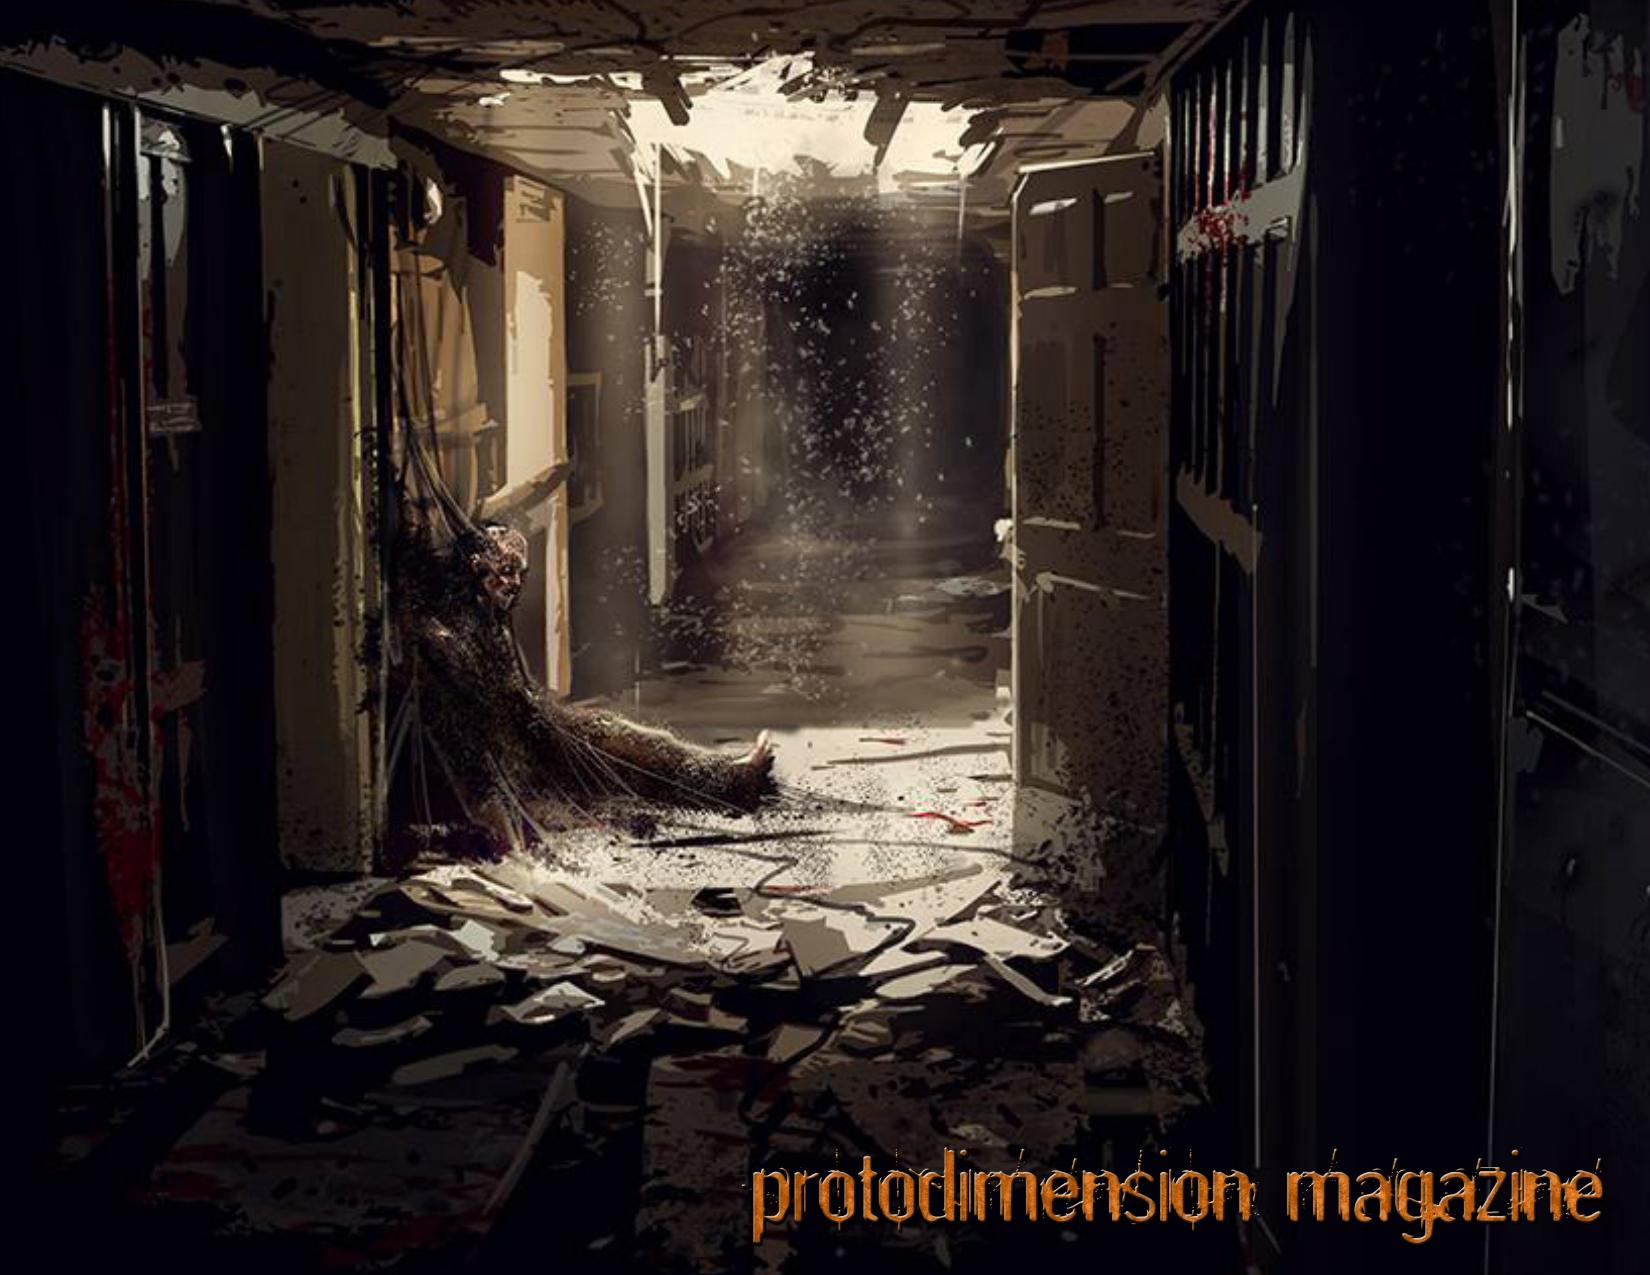 Protodimension Magazine #21 (Fall 2014)